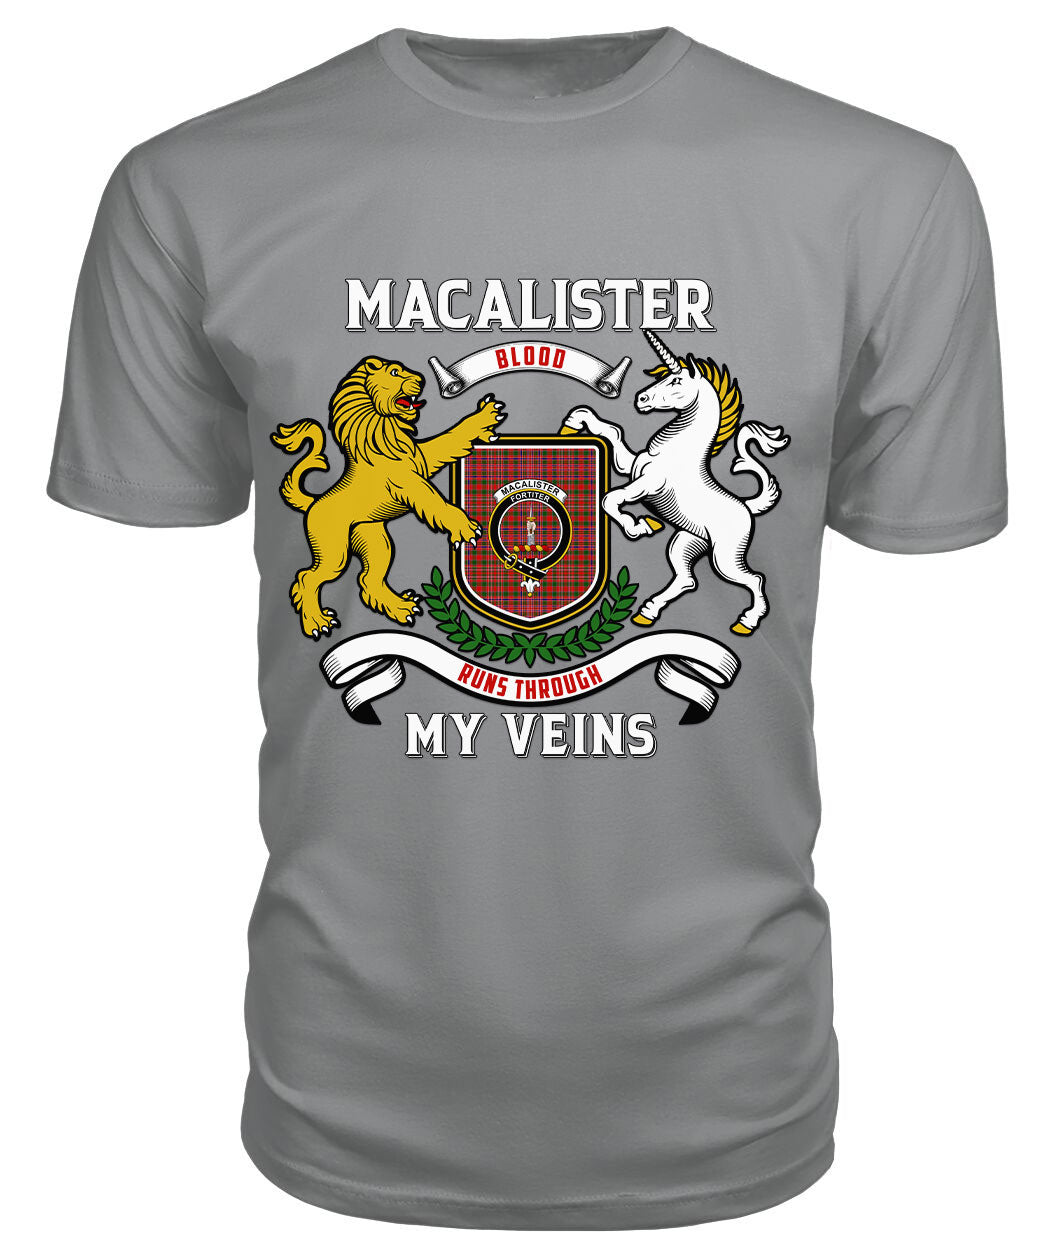 MacAlister Modern Tartan Crest 2D T-shirt - Blood Runs Through My Veins Style